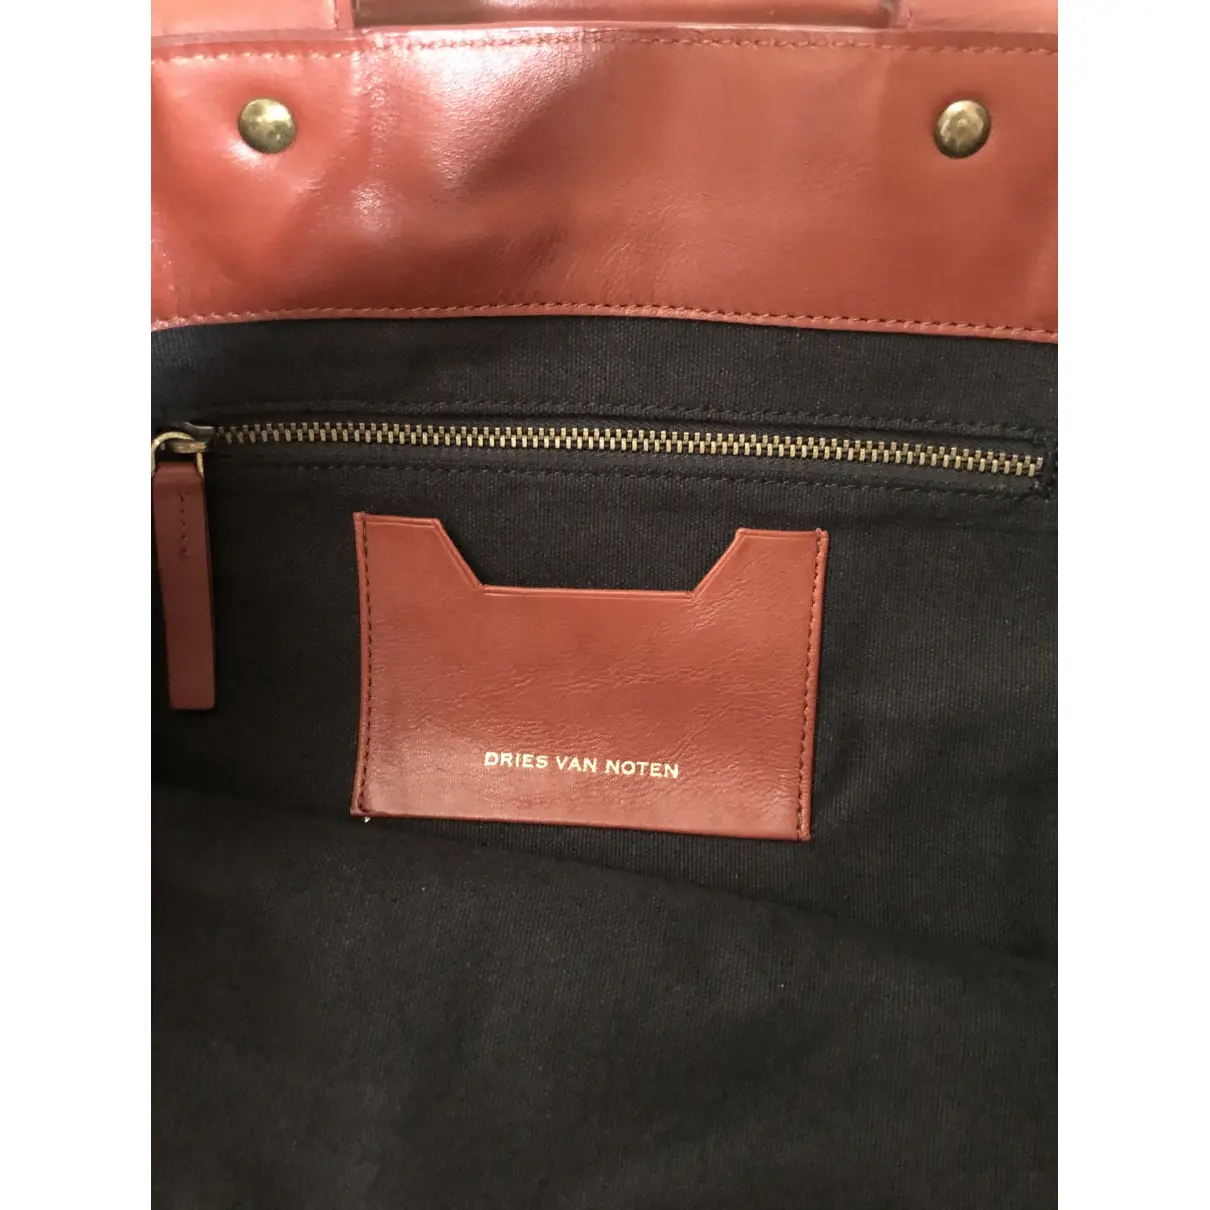 Buy Dries Van Noten Leather bag online